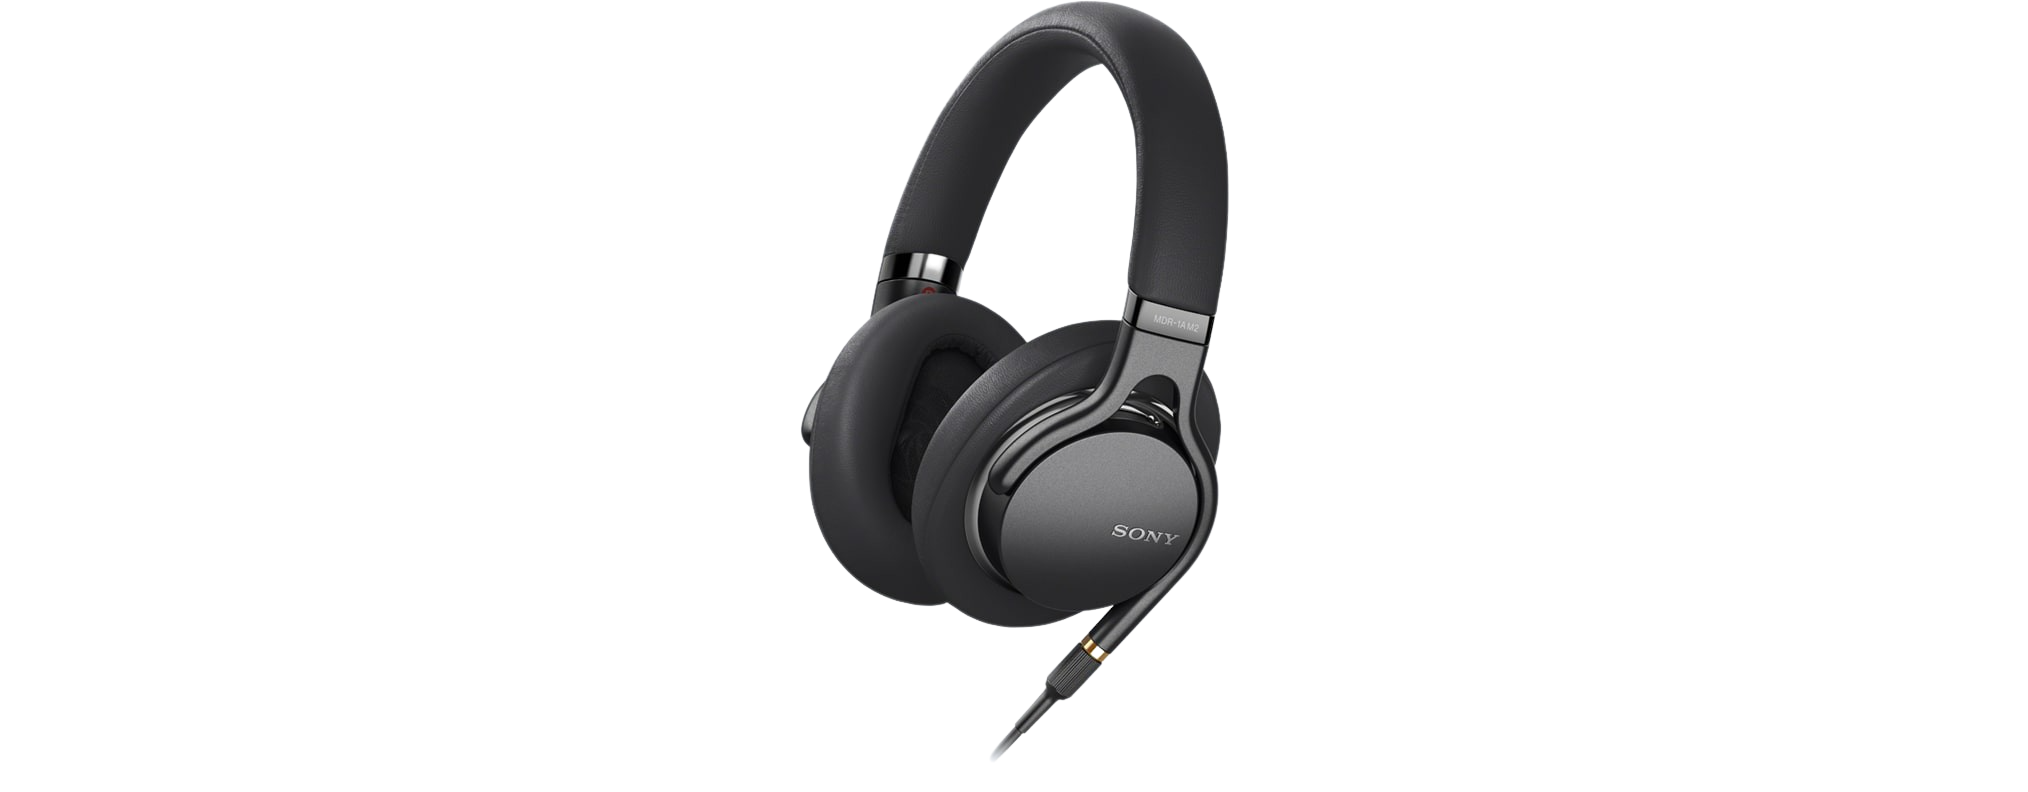 Alquila Sony WF-1000 XM5 Auriculares Bluetooth intrauditivos con  cancelación de ruido desde 13,90 € al mes